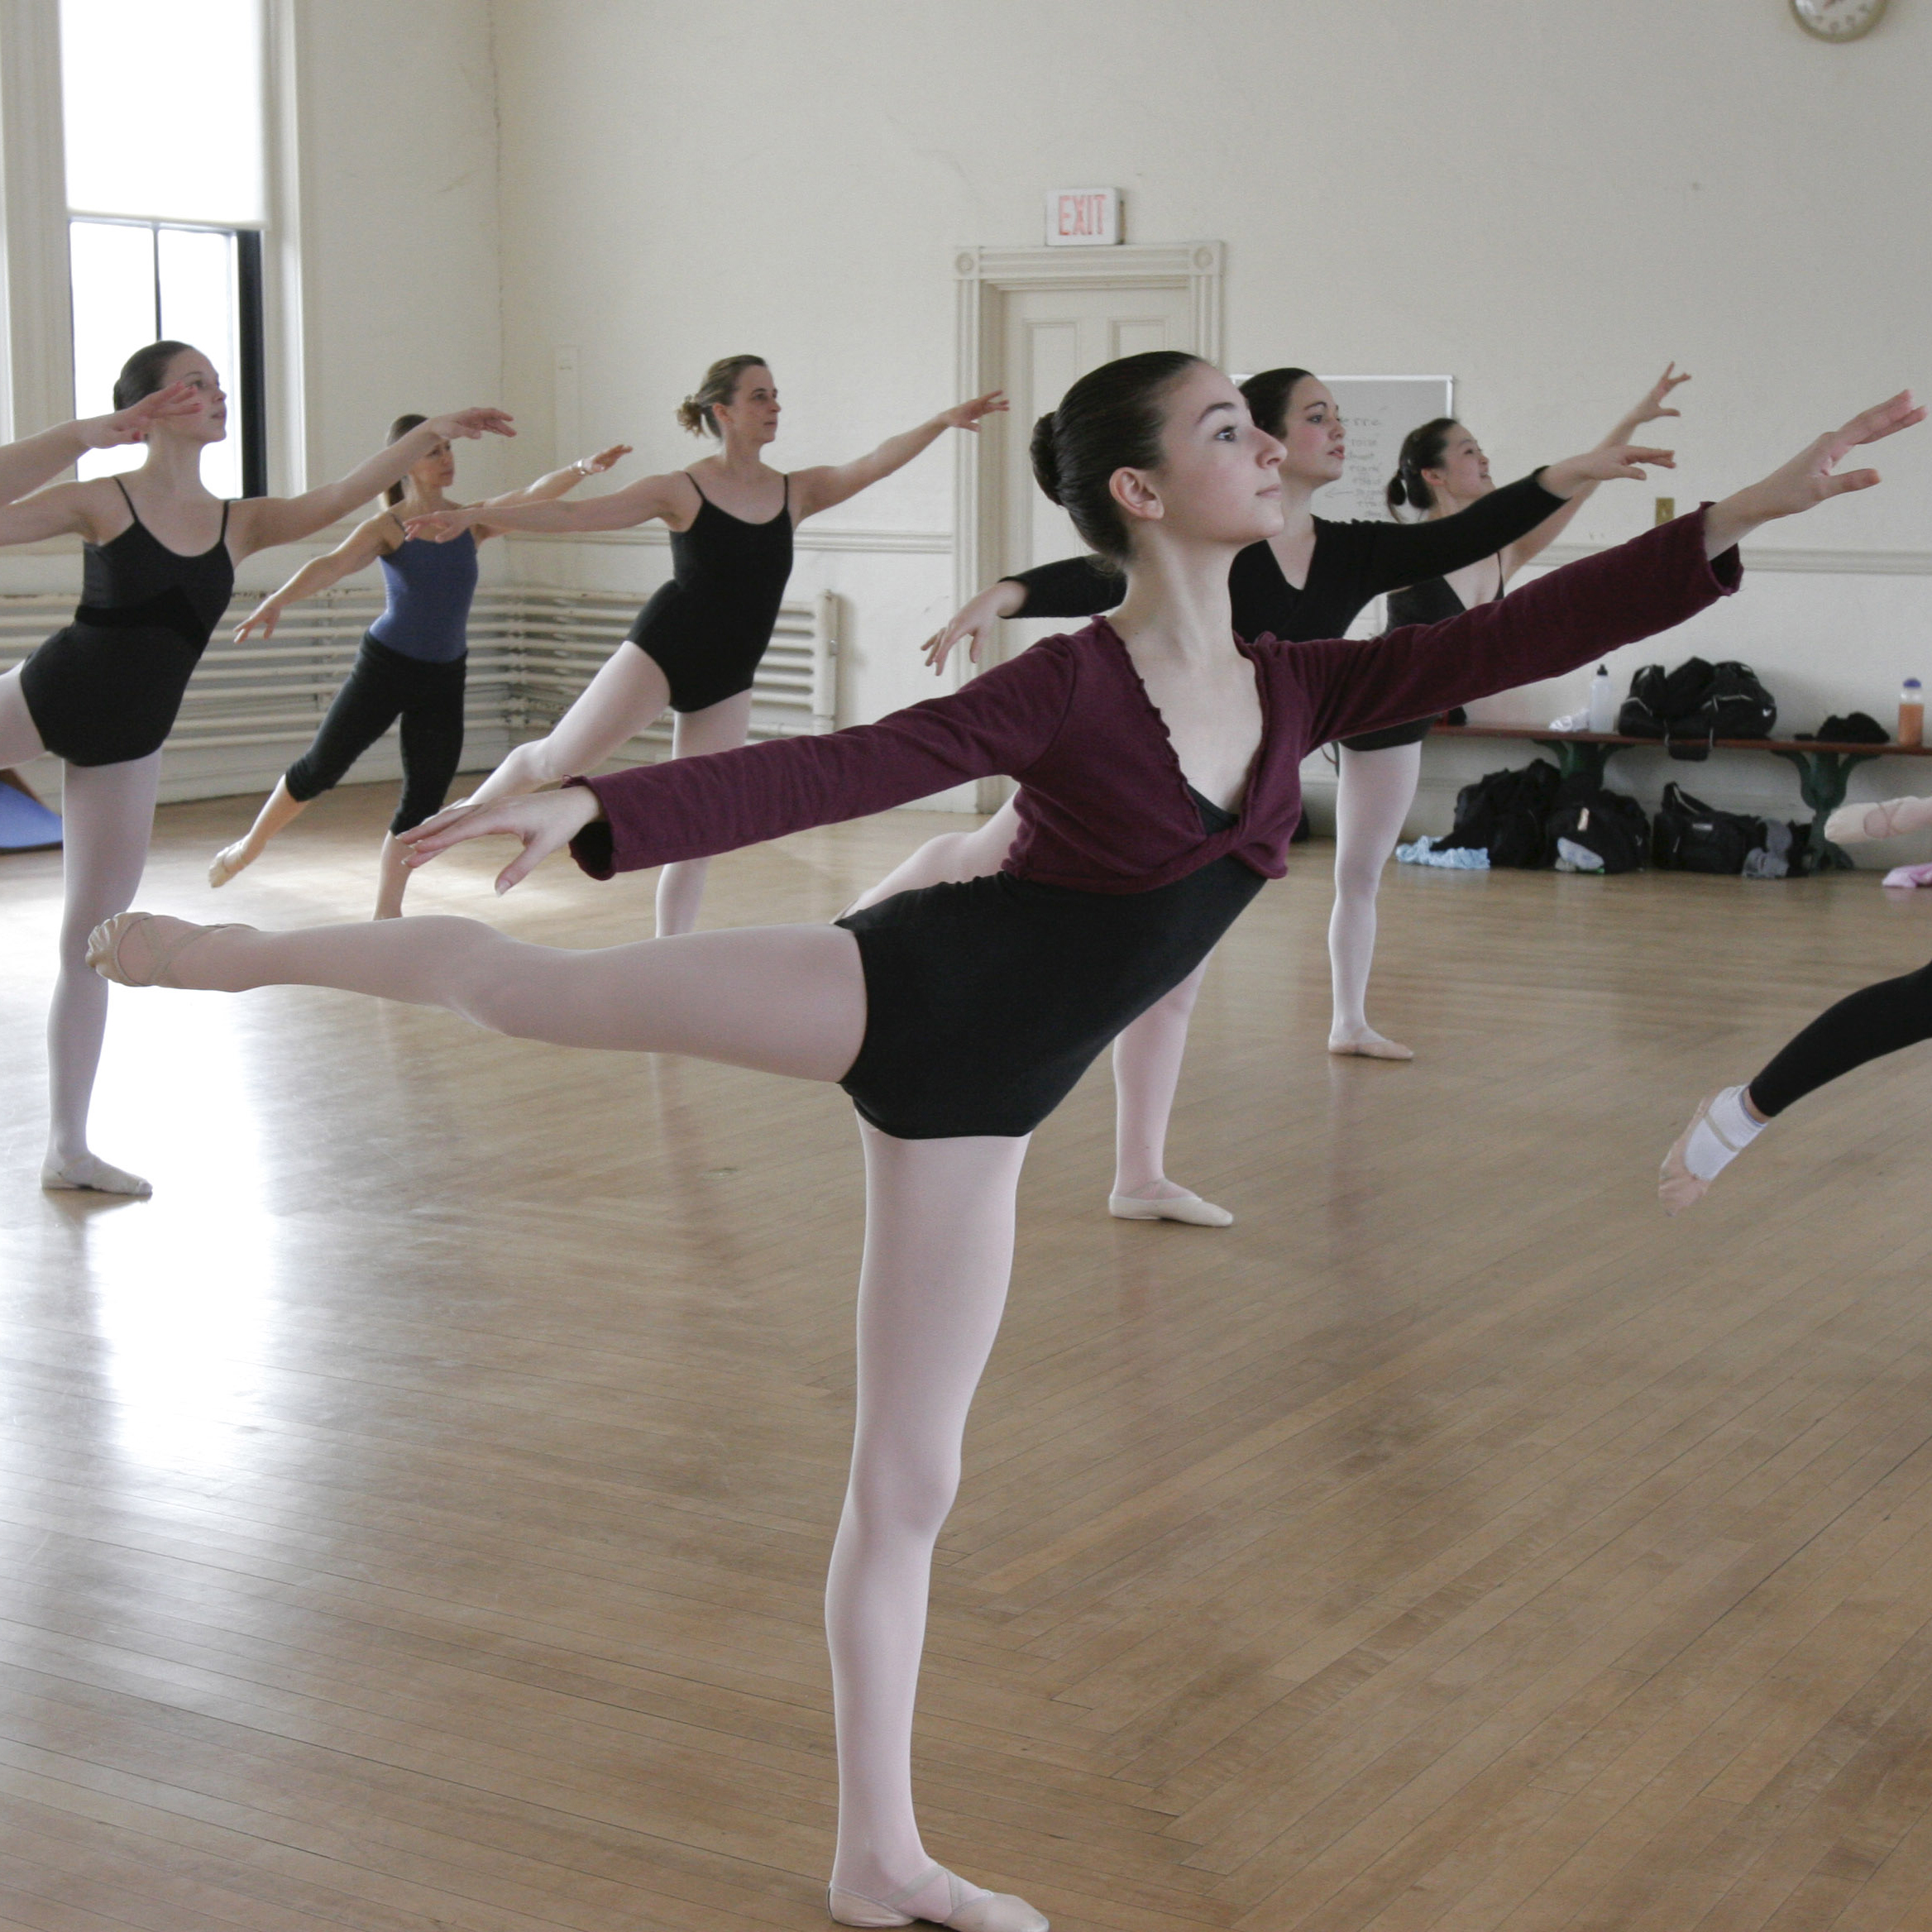 Dance studio full of ballet students pose in Arabesque.